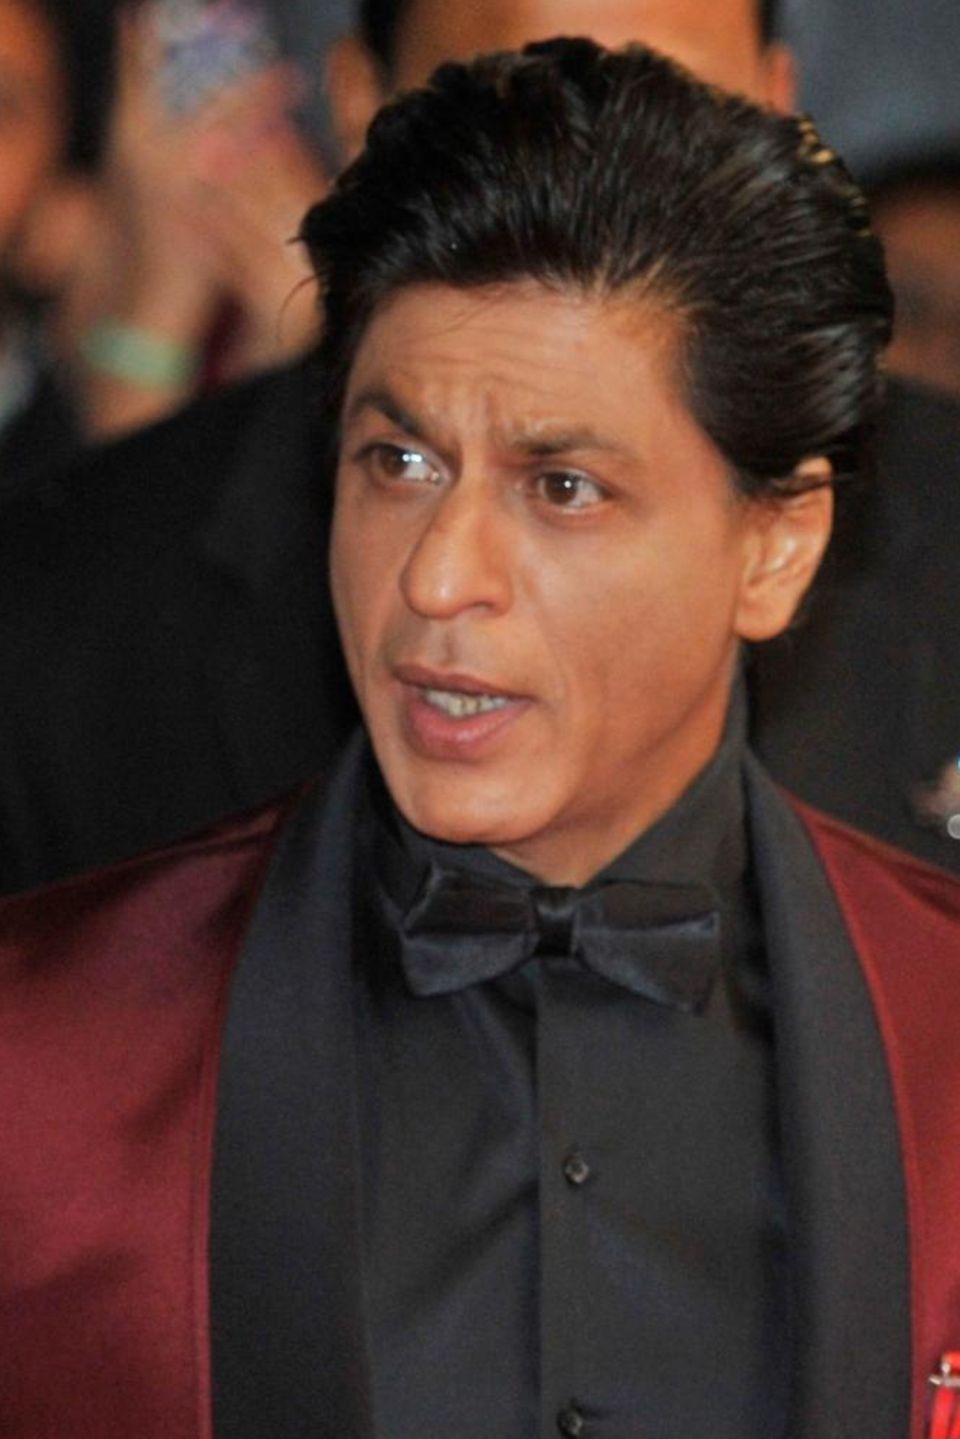 Shah Rukh Khan - Starporträt, News, Bilder | GALA.de